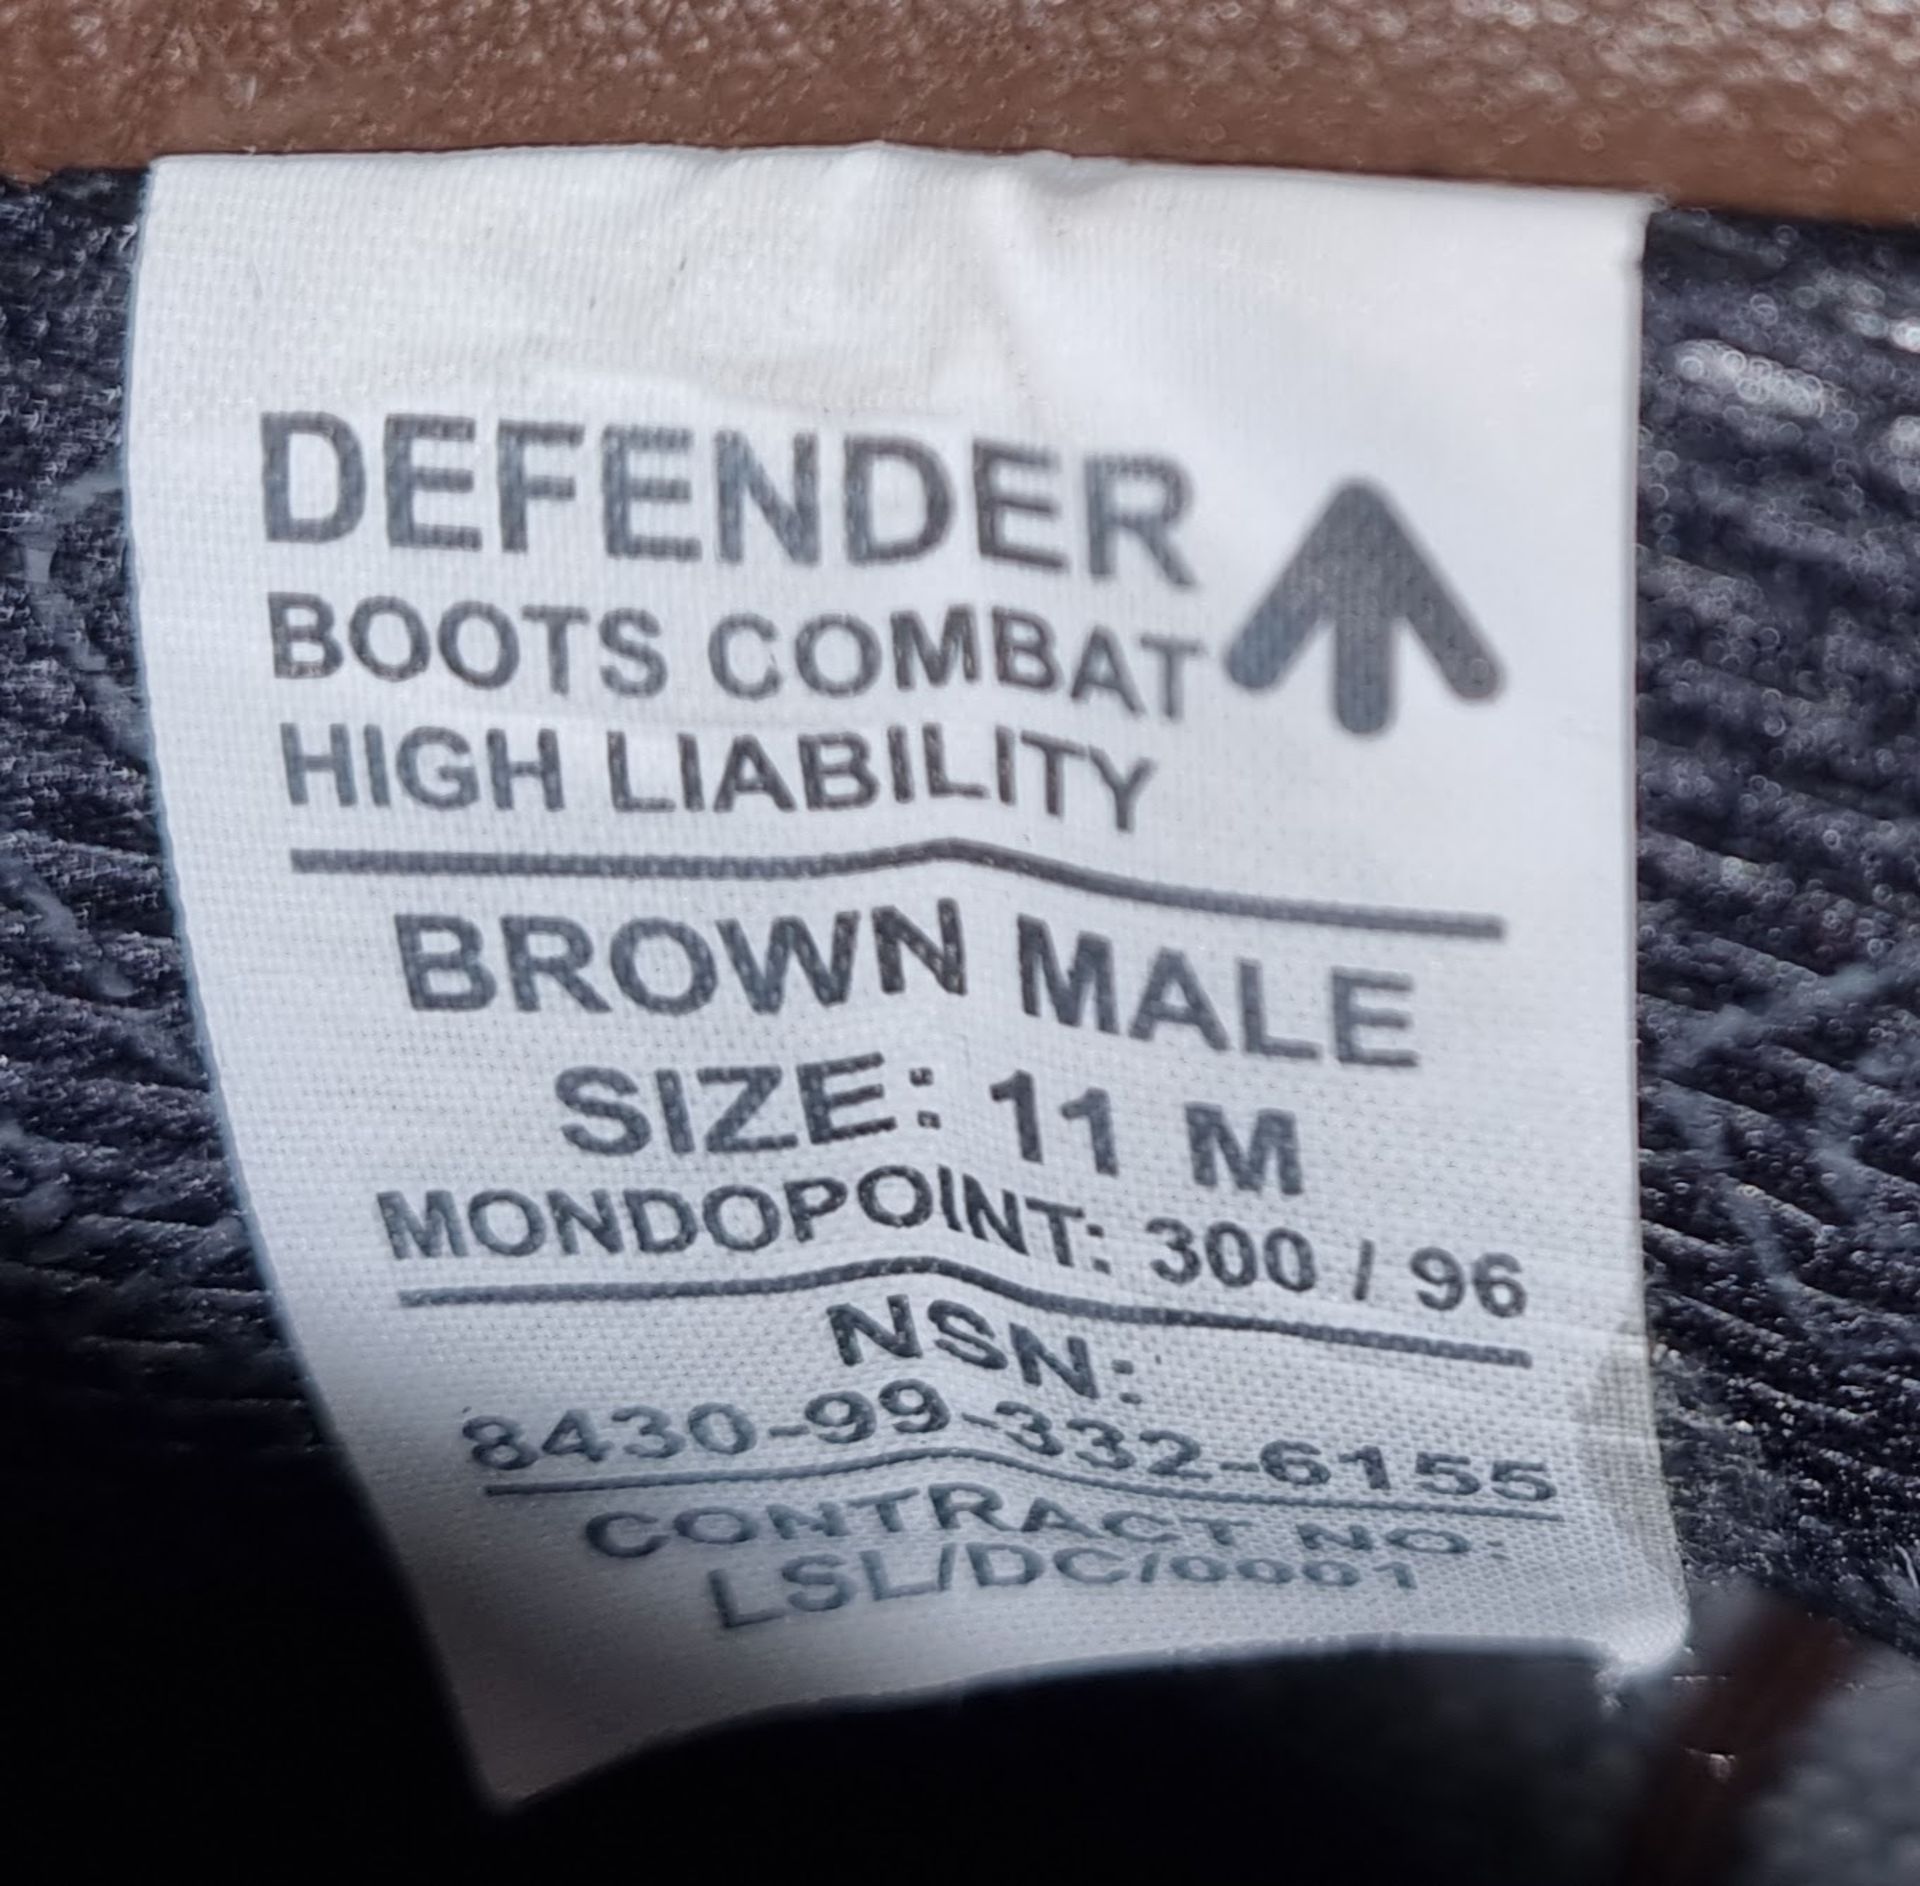 Altberg defender combat boots - Brown - 11M - Image 5 of 5